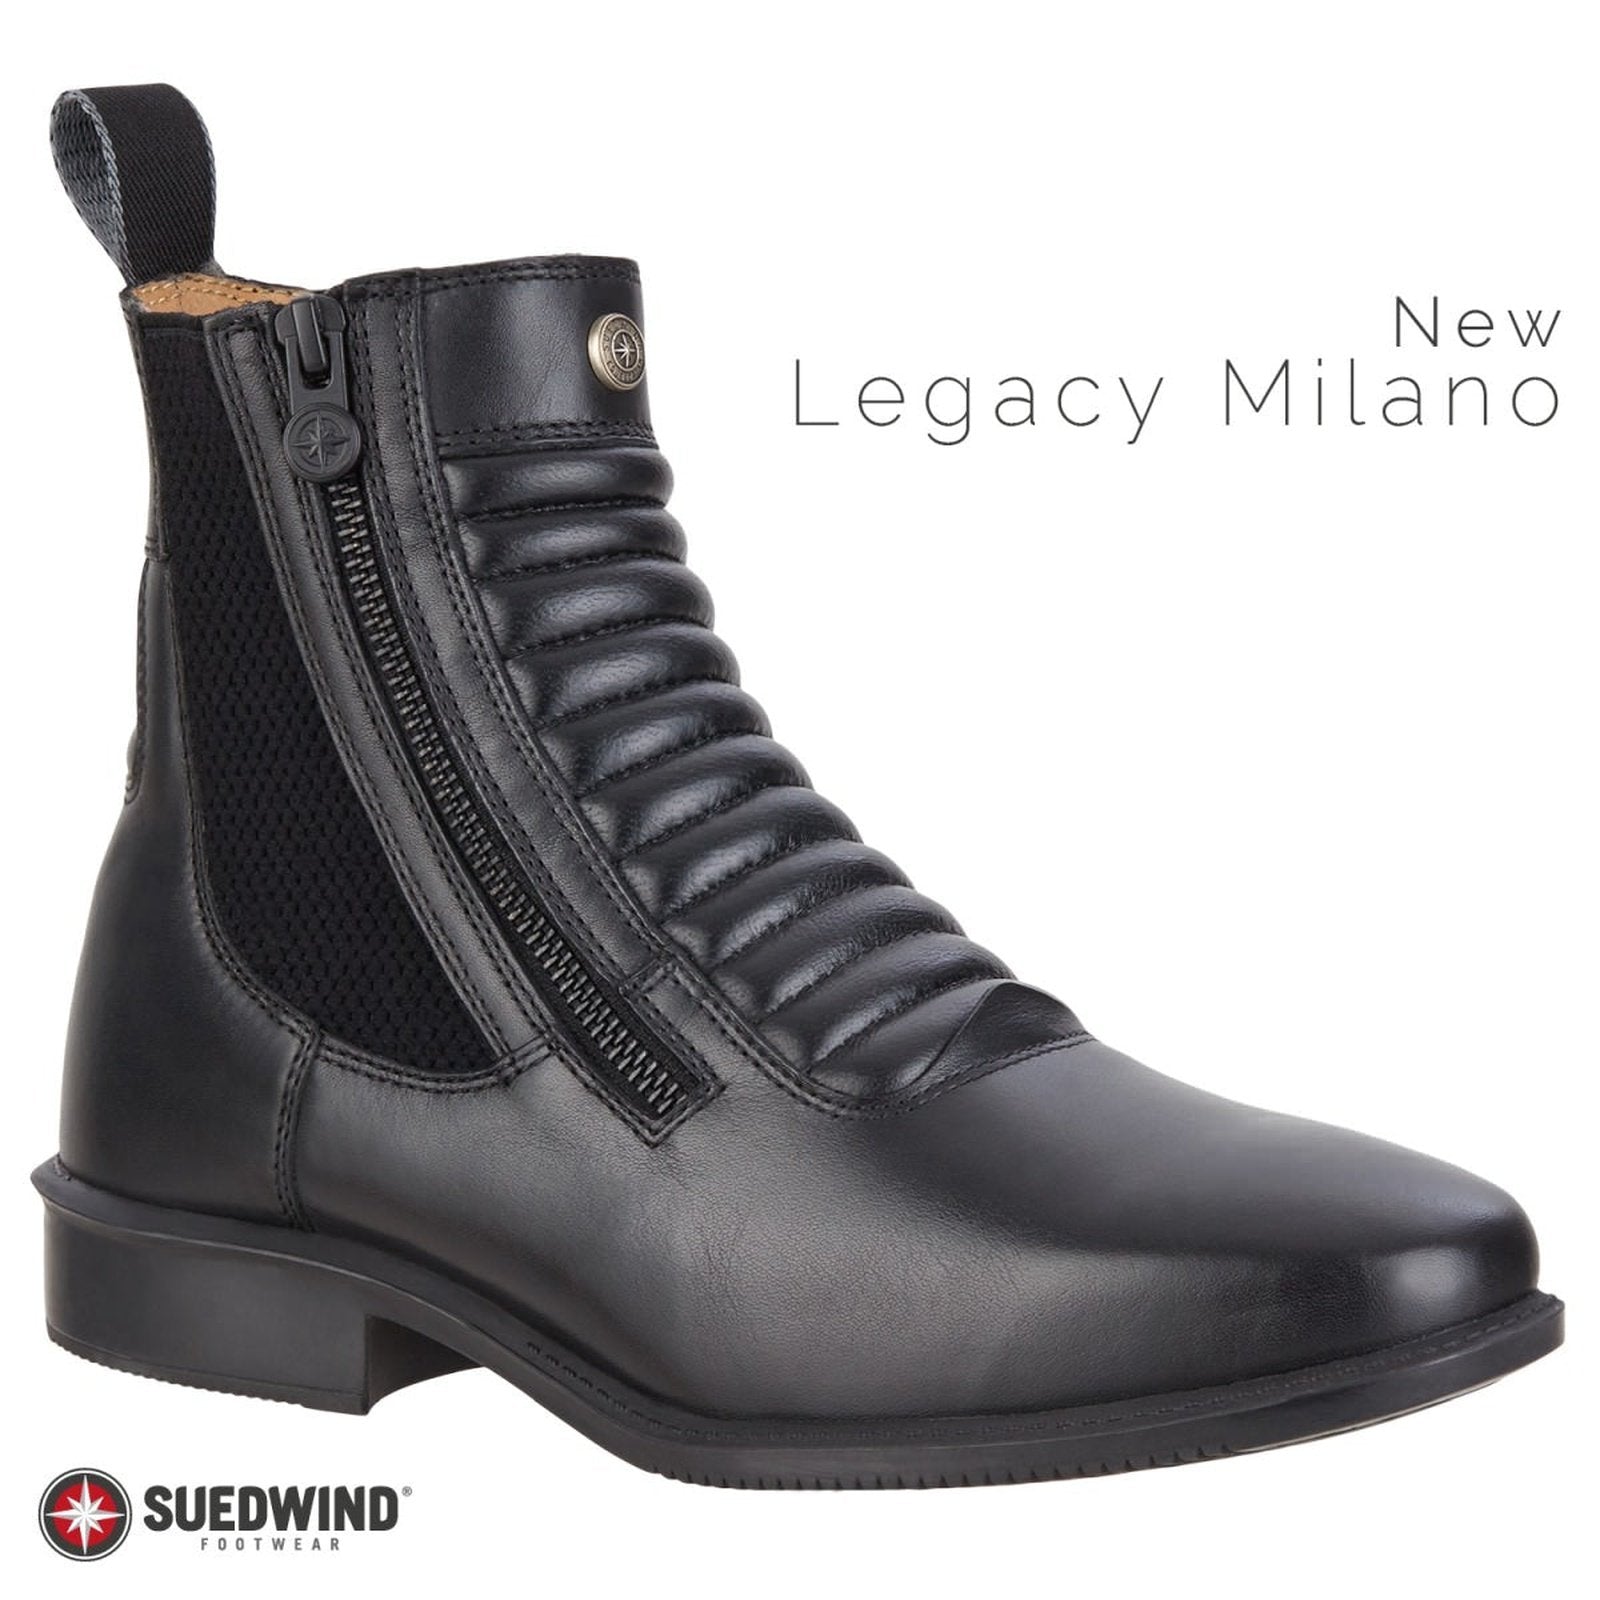 Suedwind Legacy SZ Milano modische Stiefelette in braun & schwarz Gr.37-46 Suedwind bei SP-Reitsport